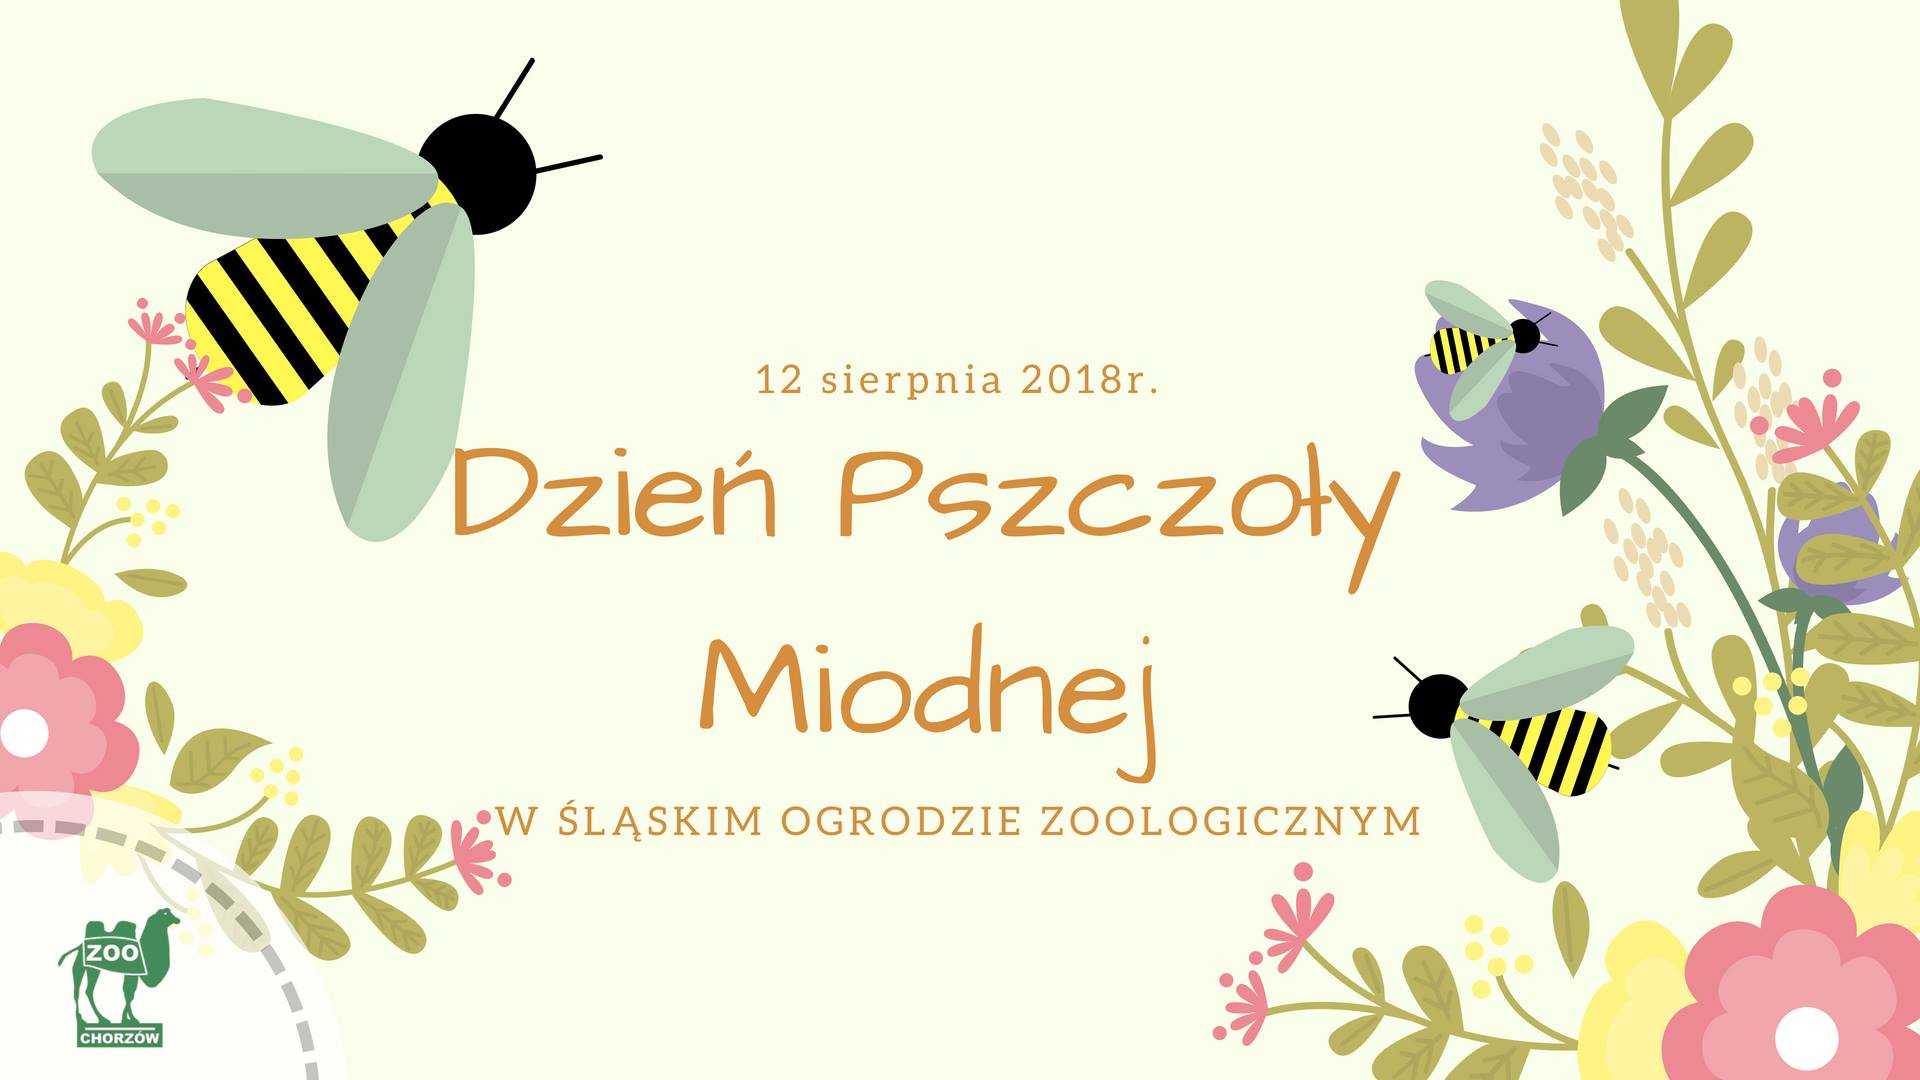 Dzień Pszczoły Miodnej w Śląskim Ogrodzie Zoologicznym